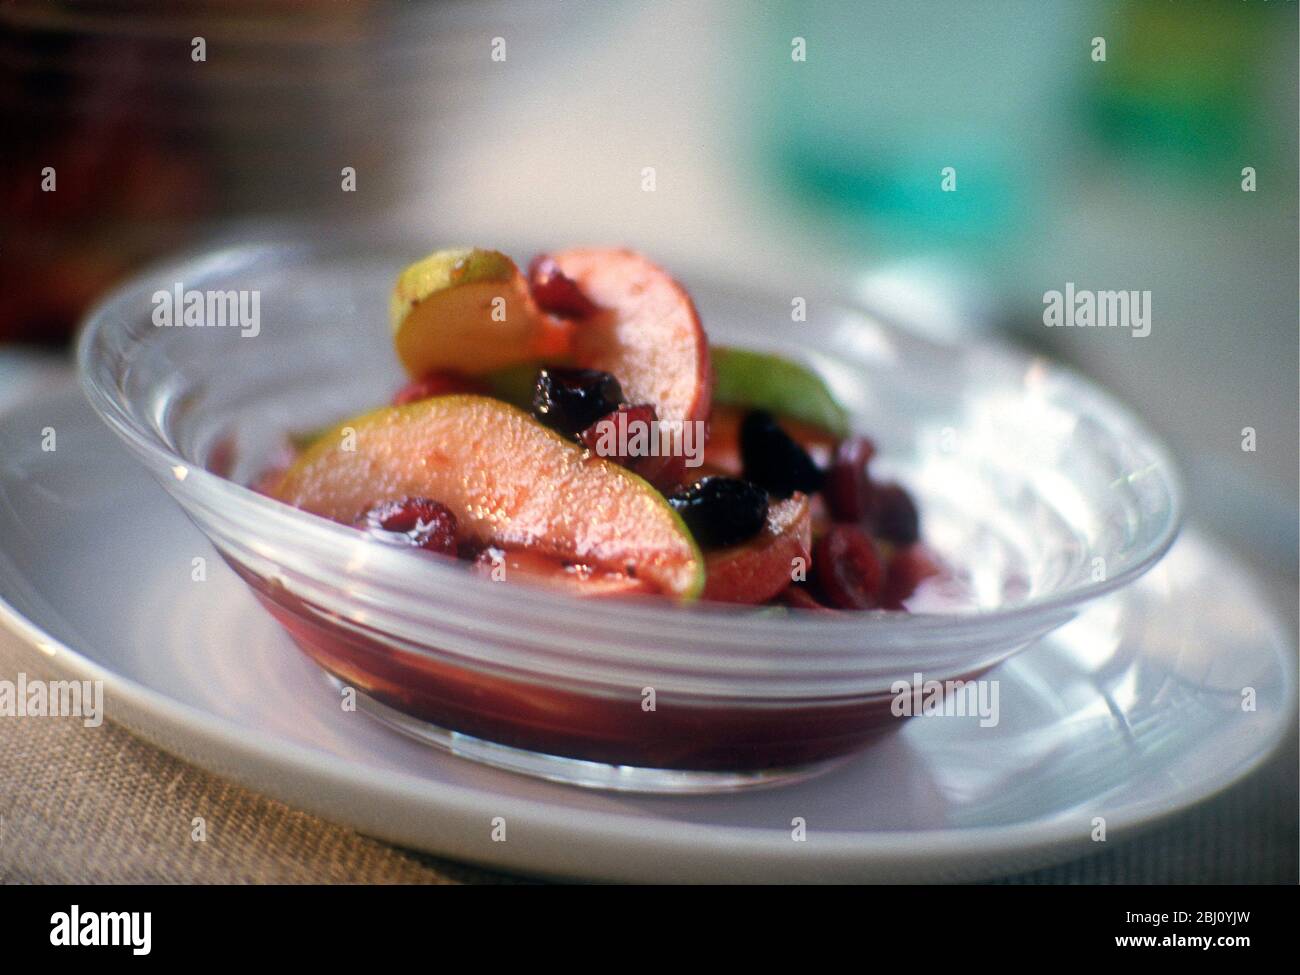 composta di frutta - Foto Stock